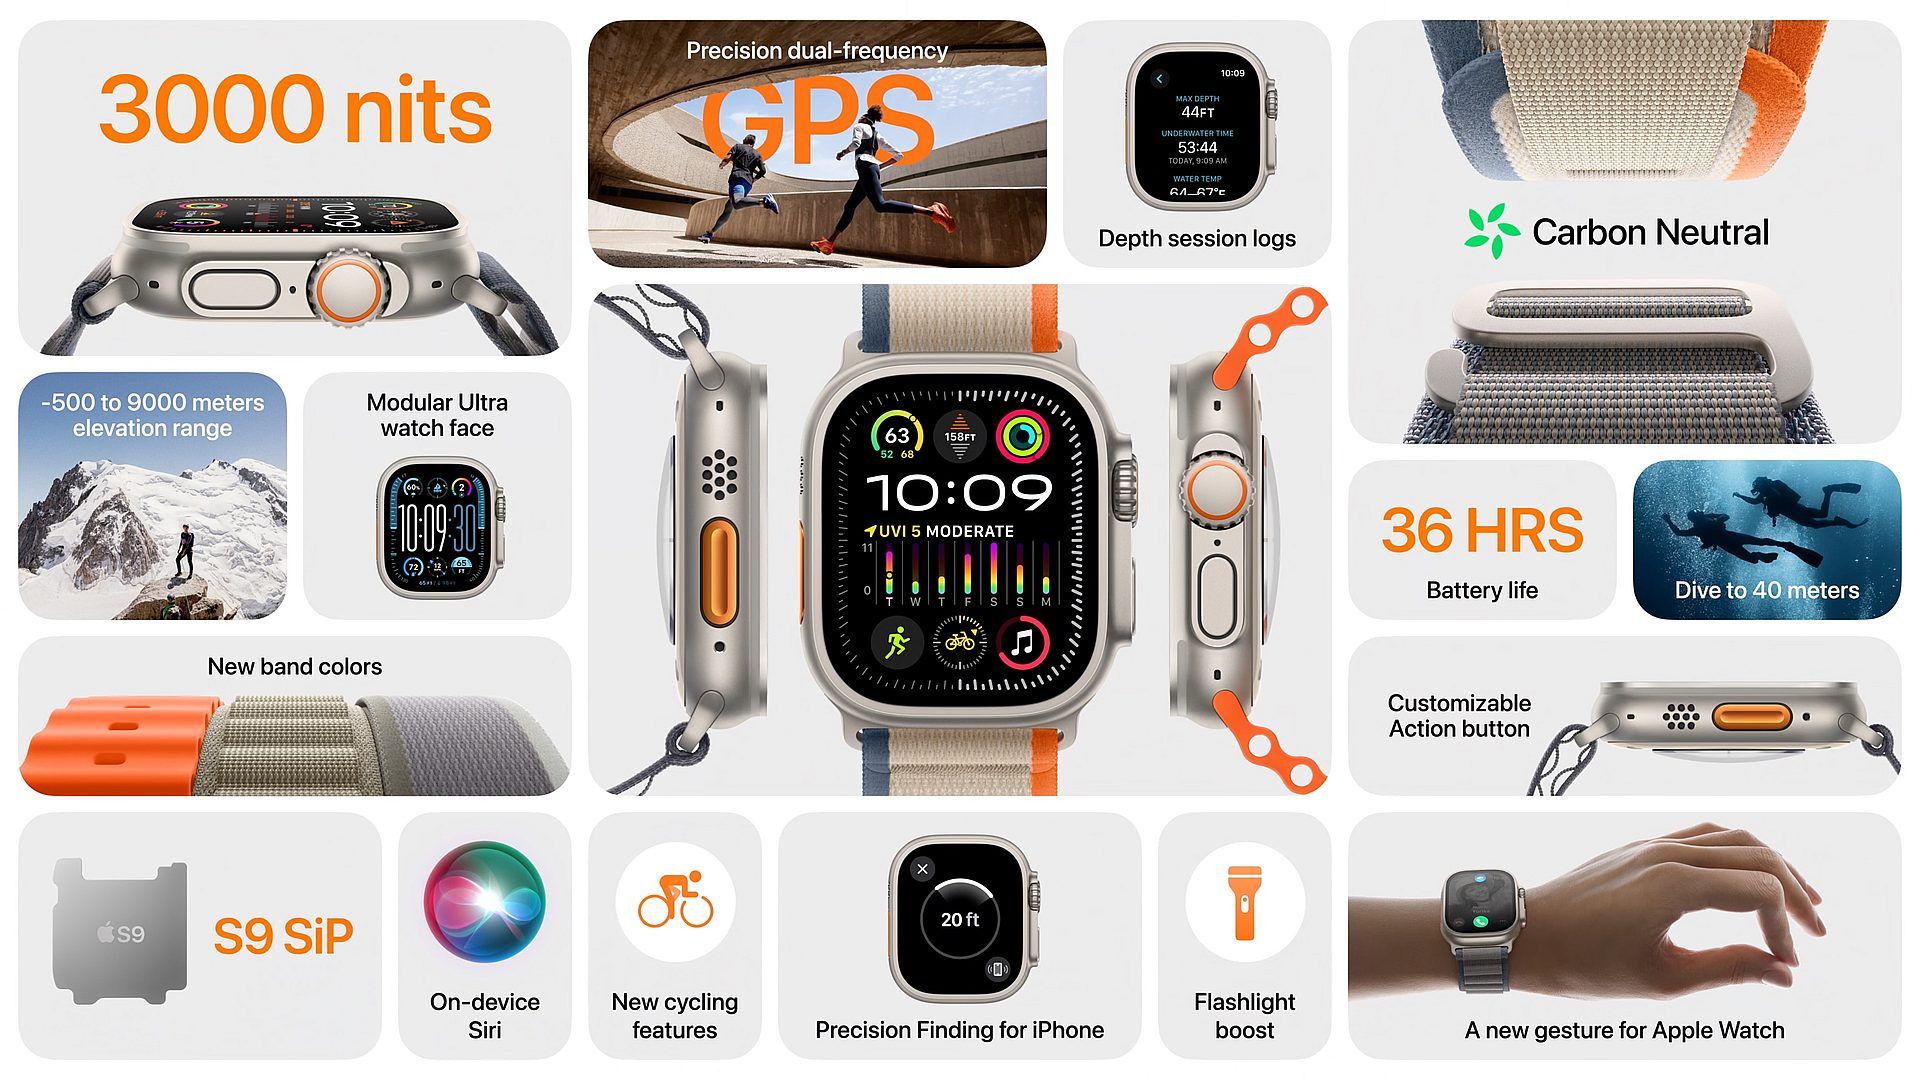 Apple Watch Ultra 2: specificaties, prijs en releasedatum